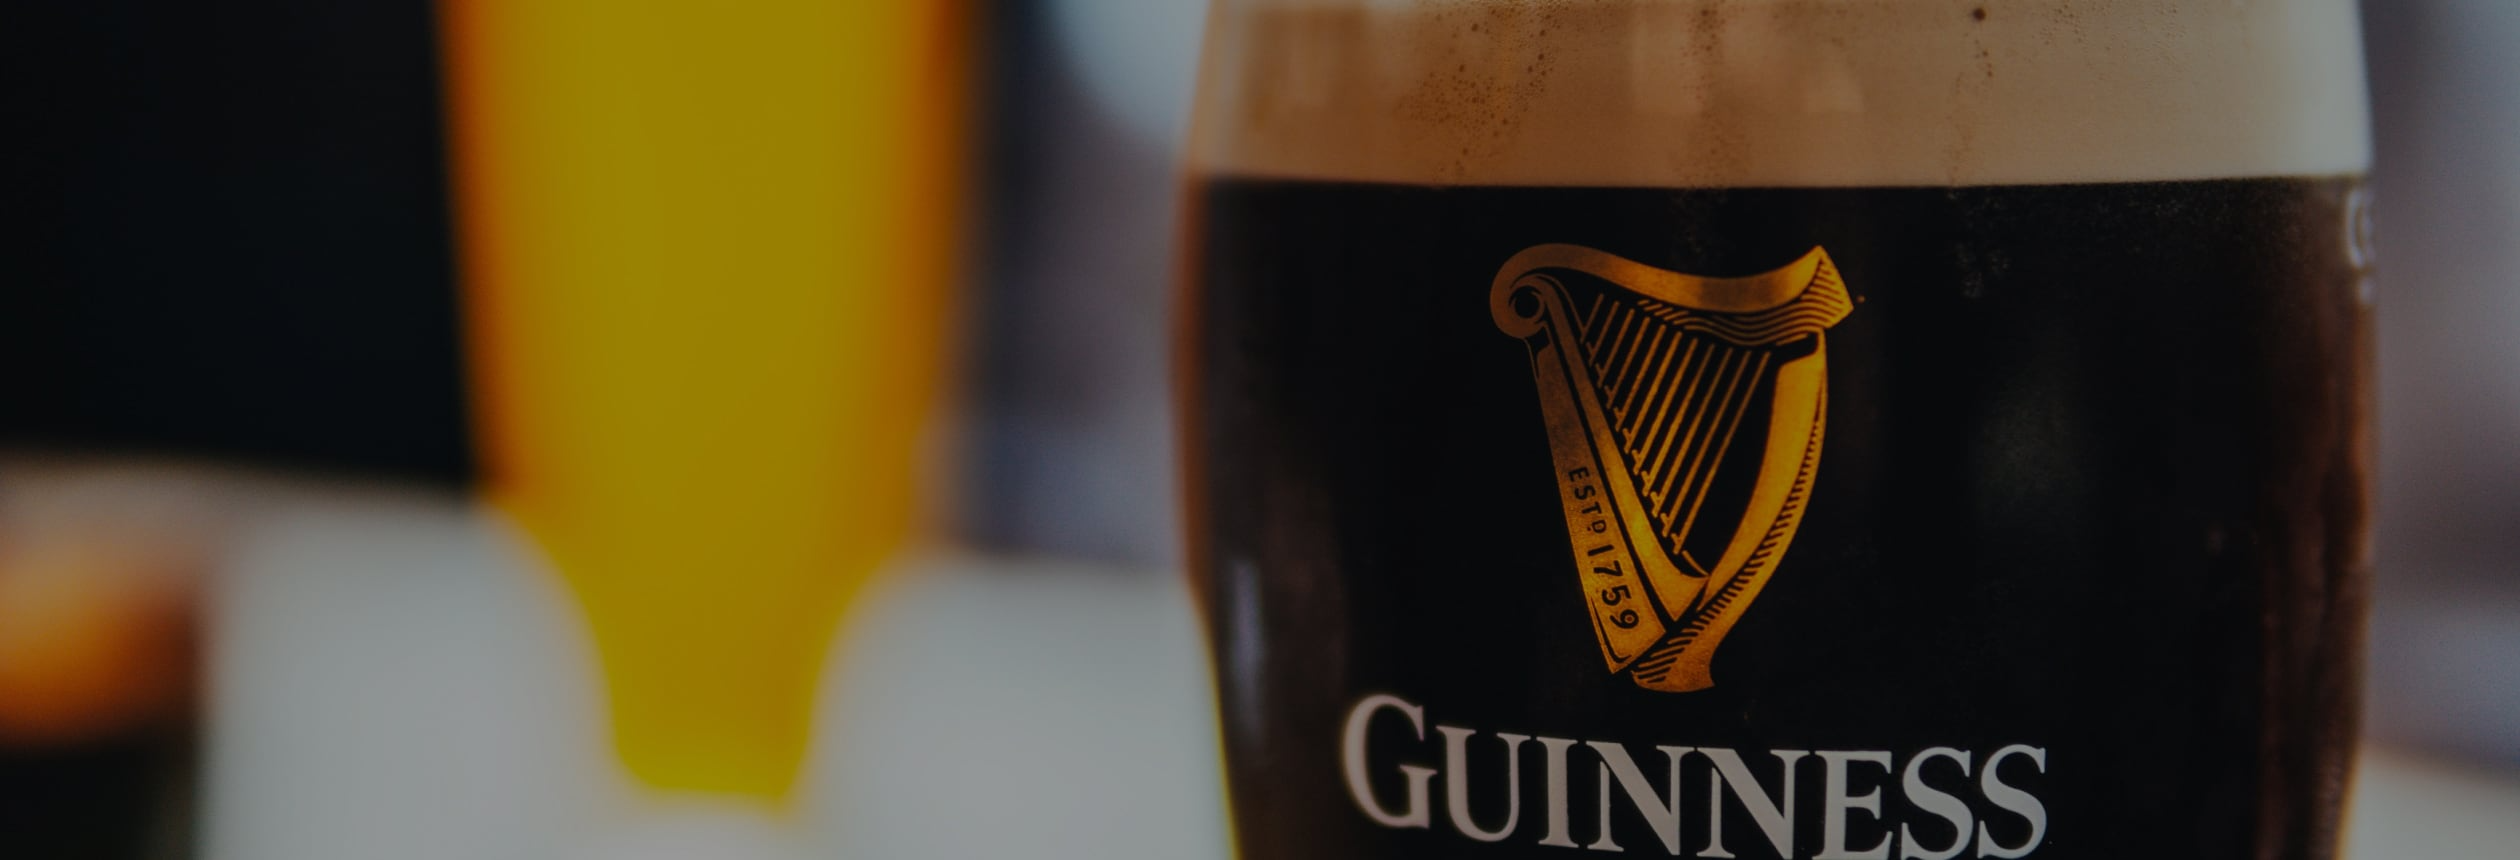 The Pratfall effect, Guinness advertising & branding